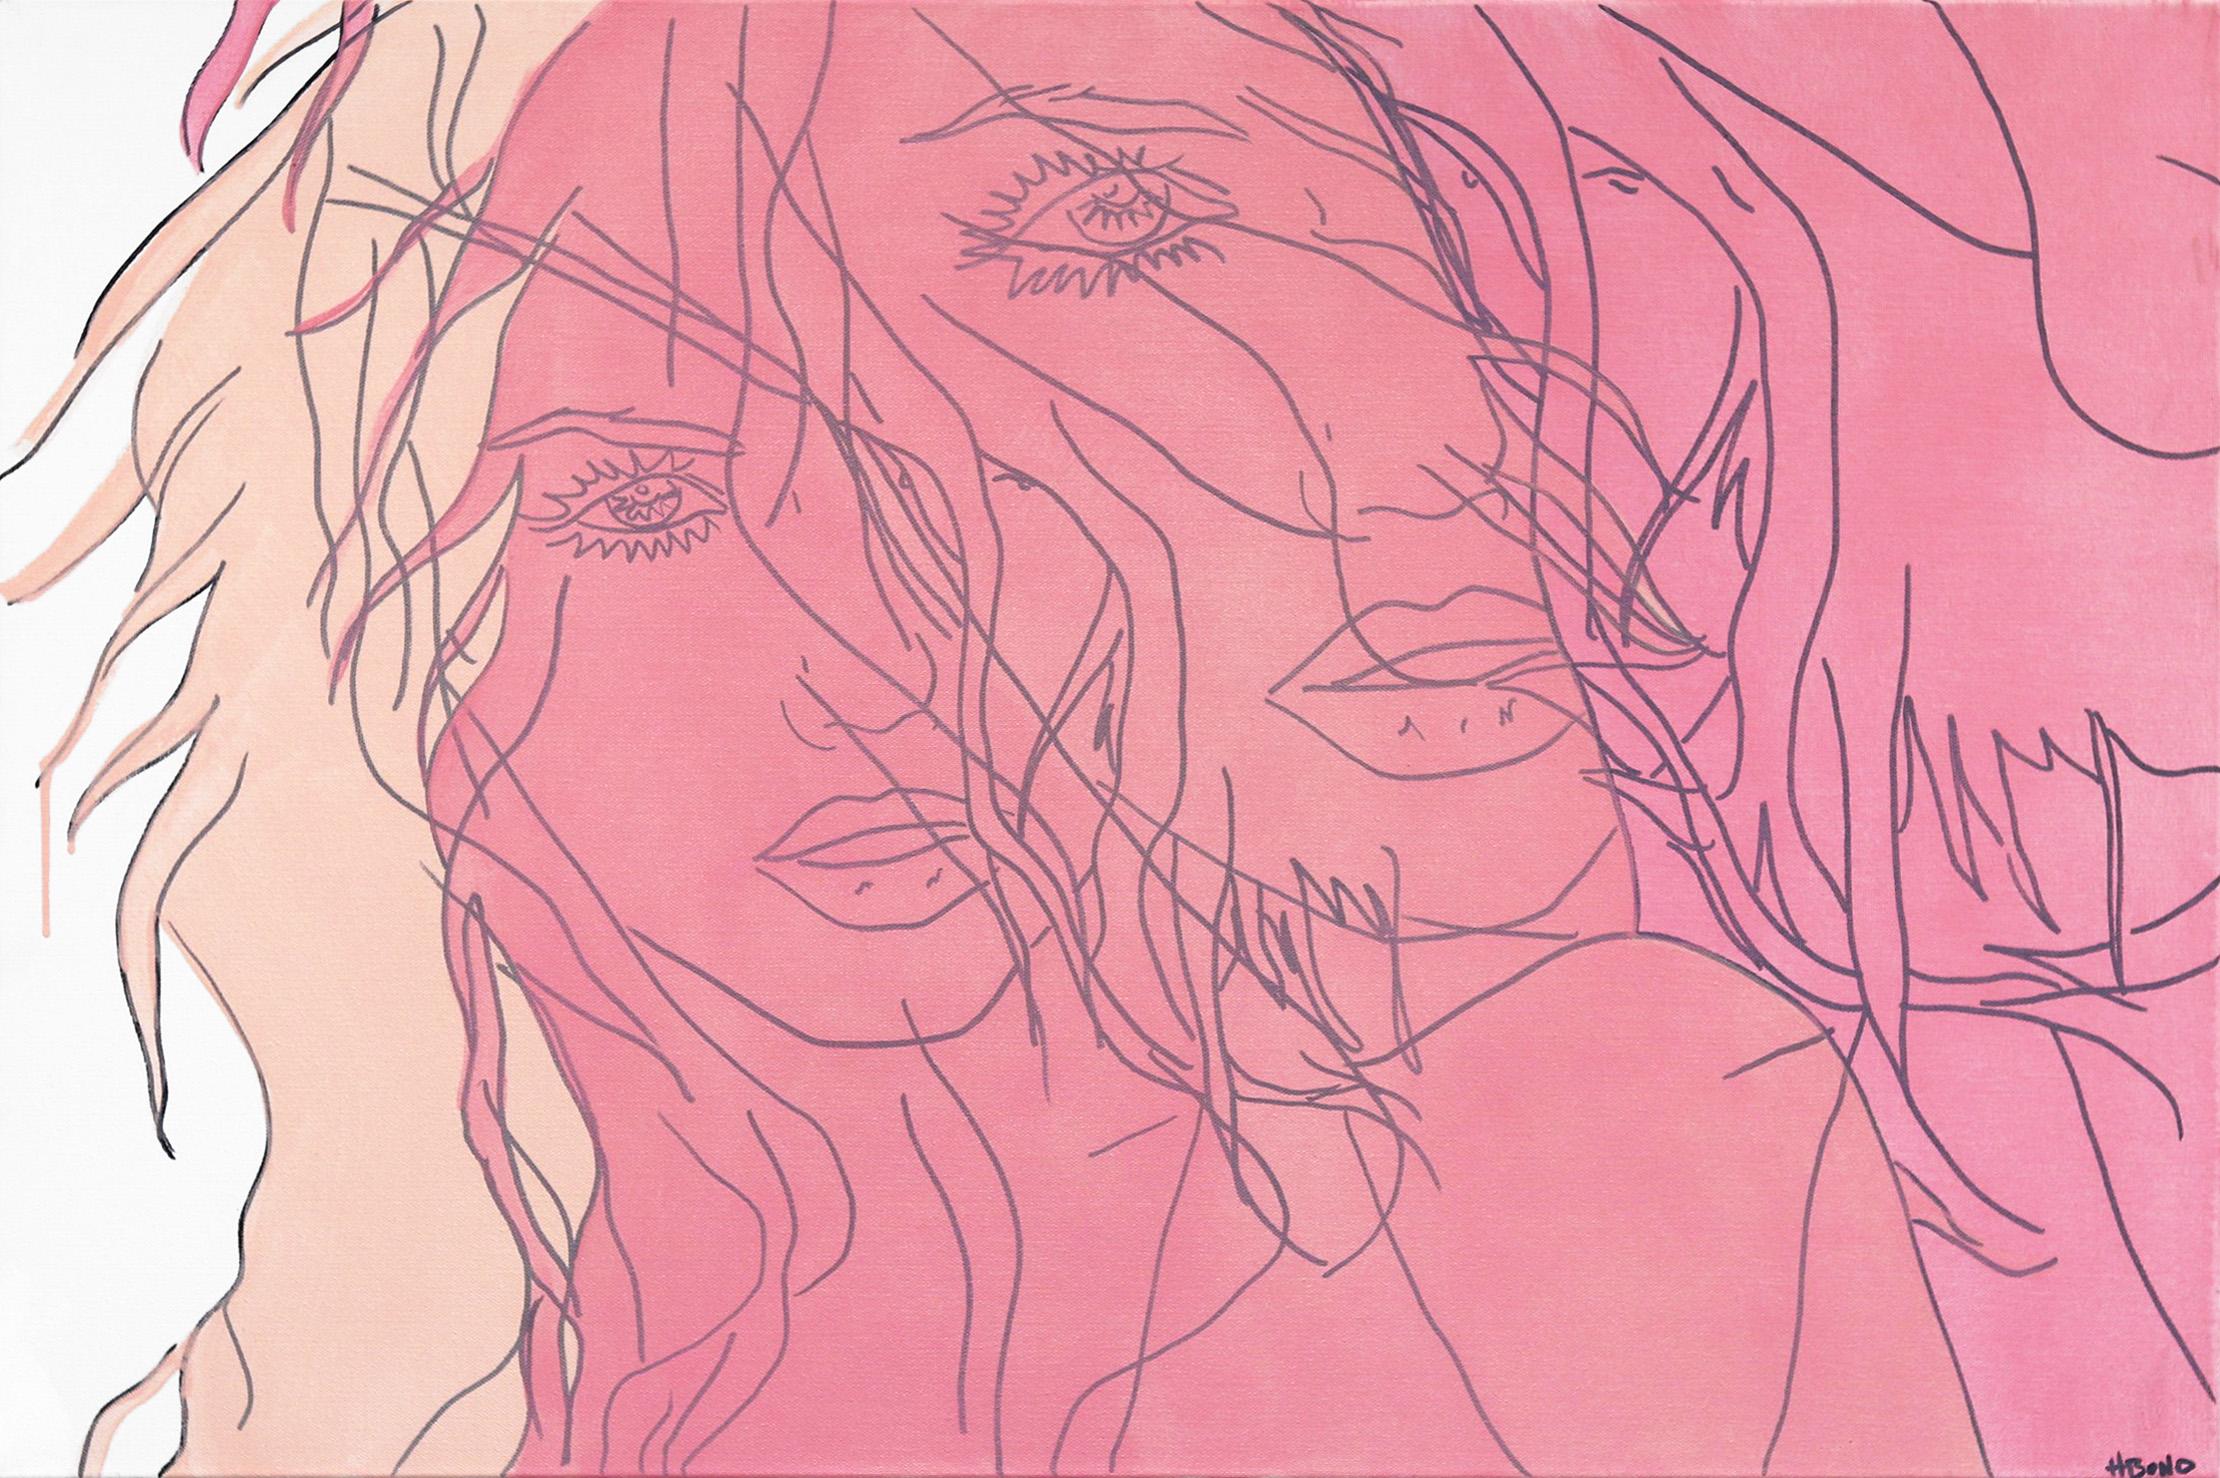 Abstract Painting Hilary Bond - Sans titre rose VI - Portrait figuratif de femme - Peinture Pop Art